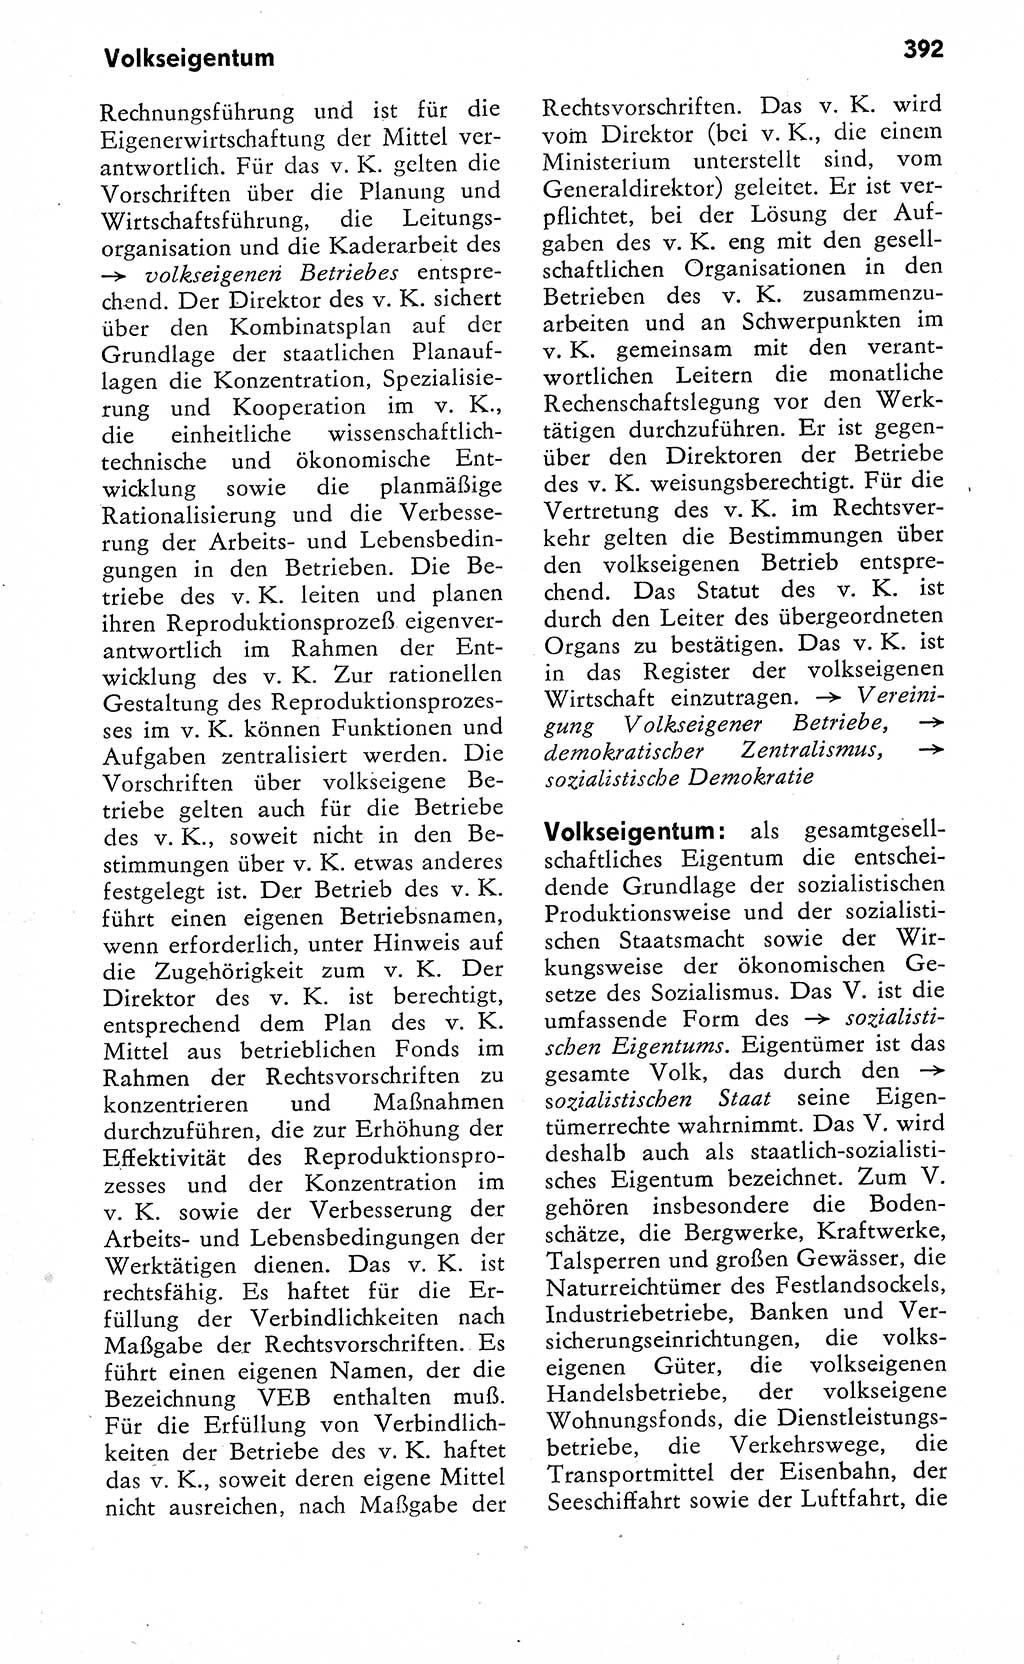 Wörterbuch zum sozialistischen Staat [Deutsche Demokratische Republik (DDR)] 1974, Seite 392 (Wb. soz. St. DDR 1974, S. 392)